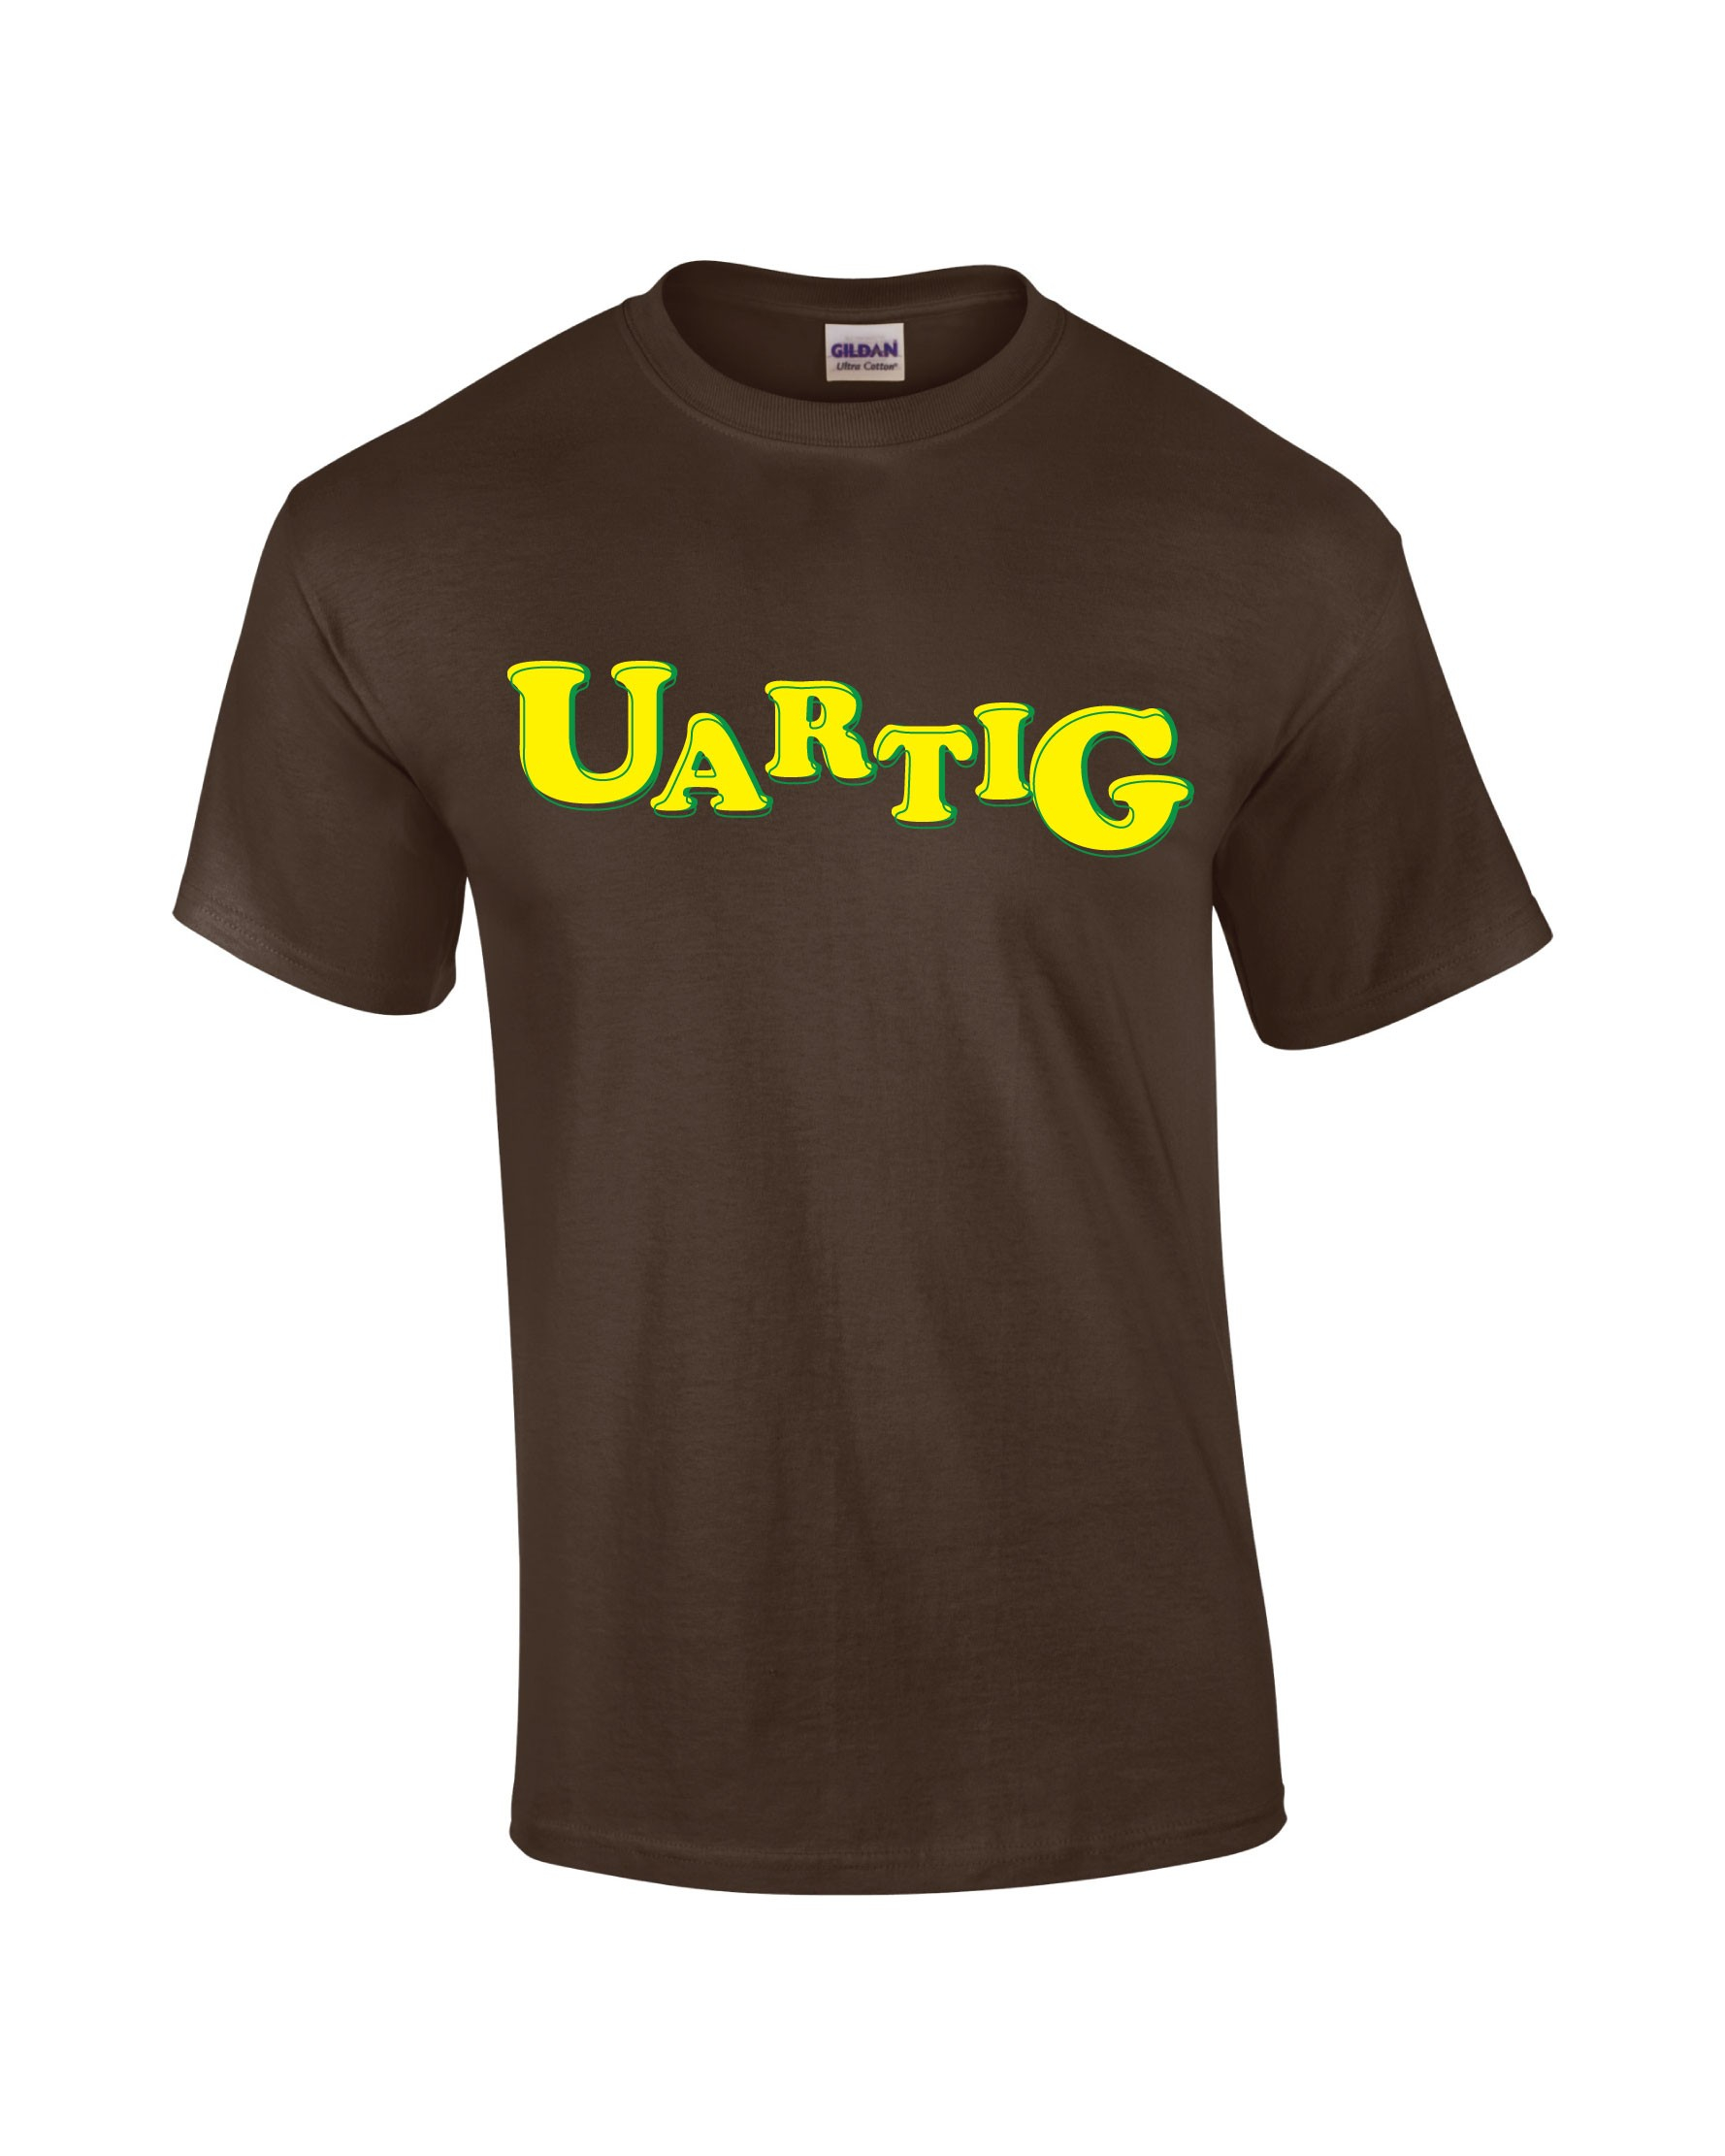 T-Shirt - Uartig